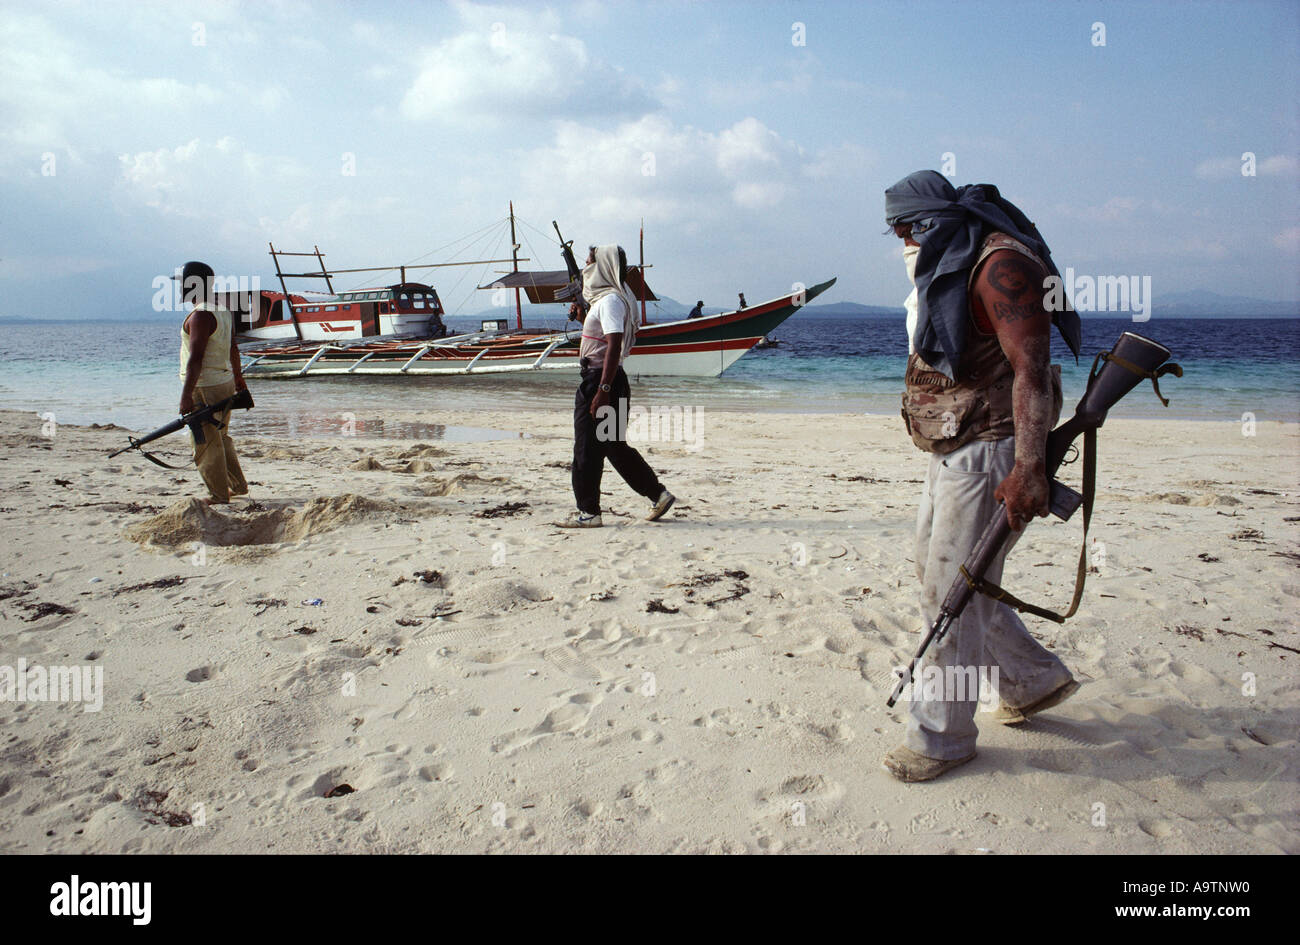 La tripulación de piratas caminando por la playa de arena, poco profundos, su barca en el fondo. Foto de stock